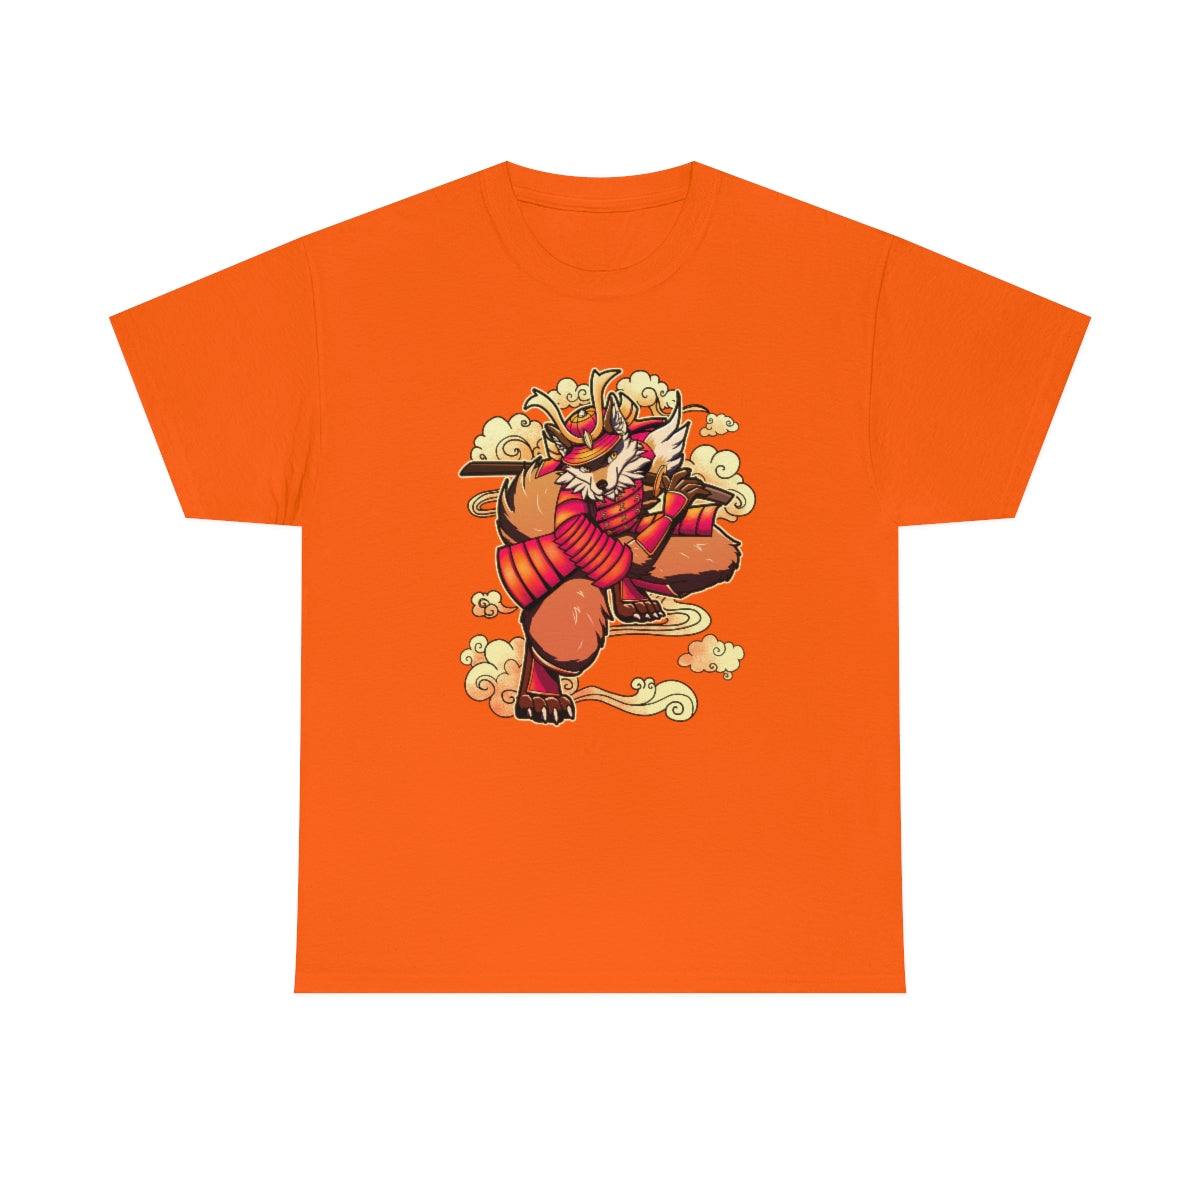 Samurai - T-Shirt T-Shirt Artworktee Orange S 